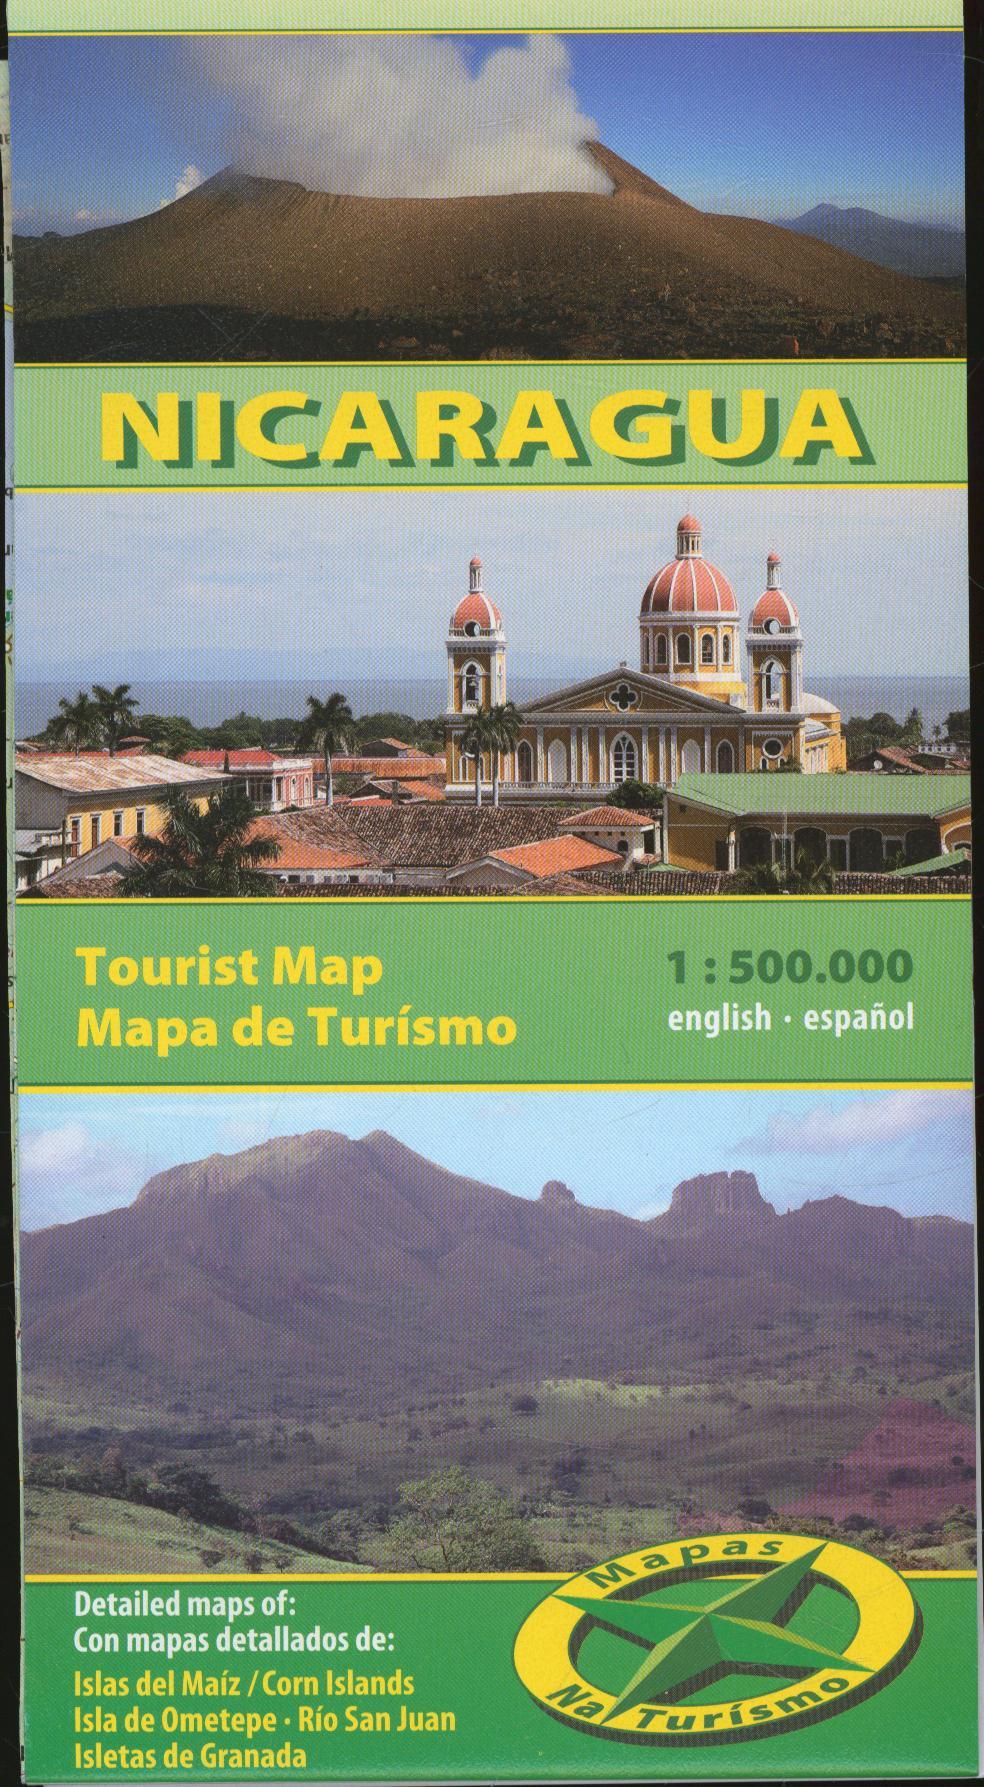 Nicaragua Karte, mapa de Tourismo 1:500.000,english & espanol / Tourismus- und Straßenkarte,,, - Mapas Naturísmo